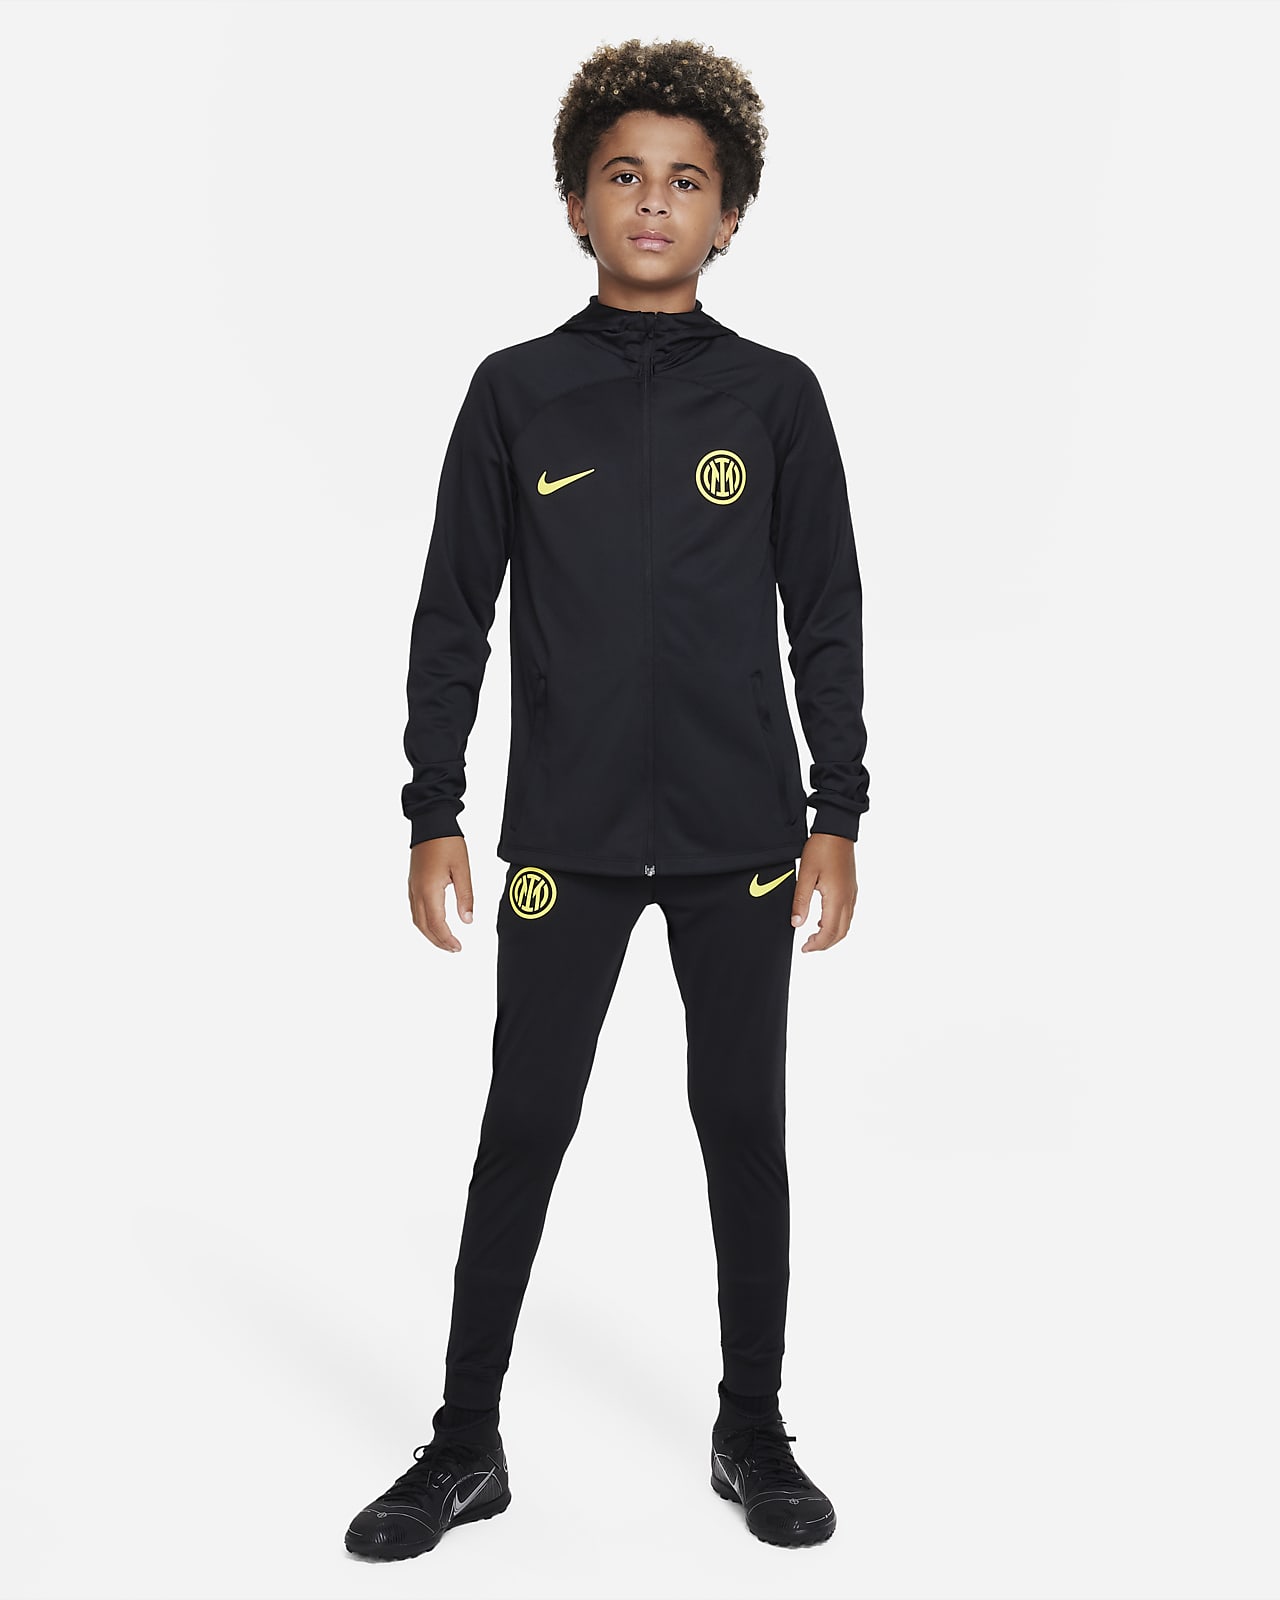 Haat Ik wil niet ongezond Inter Milan Strike Nike Dri-FIT voetbaltrainingspak met capuchon voor kids.  Nike NL